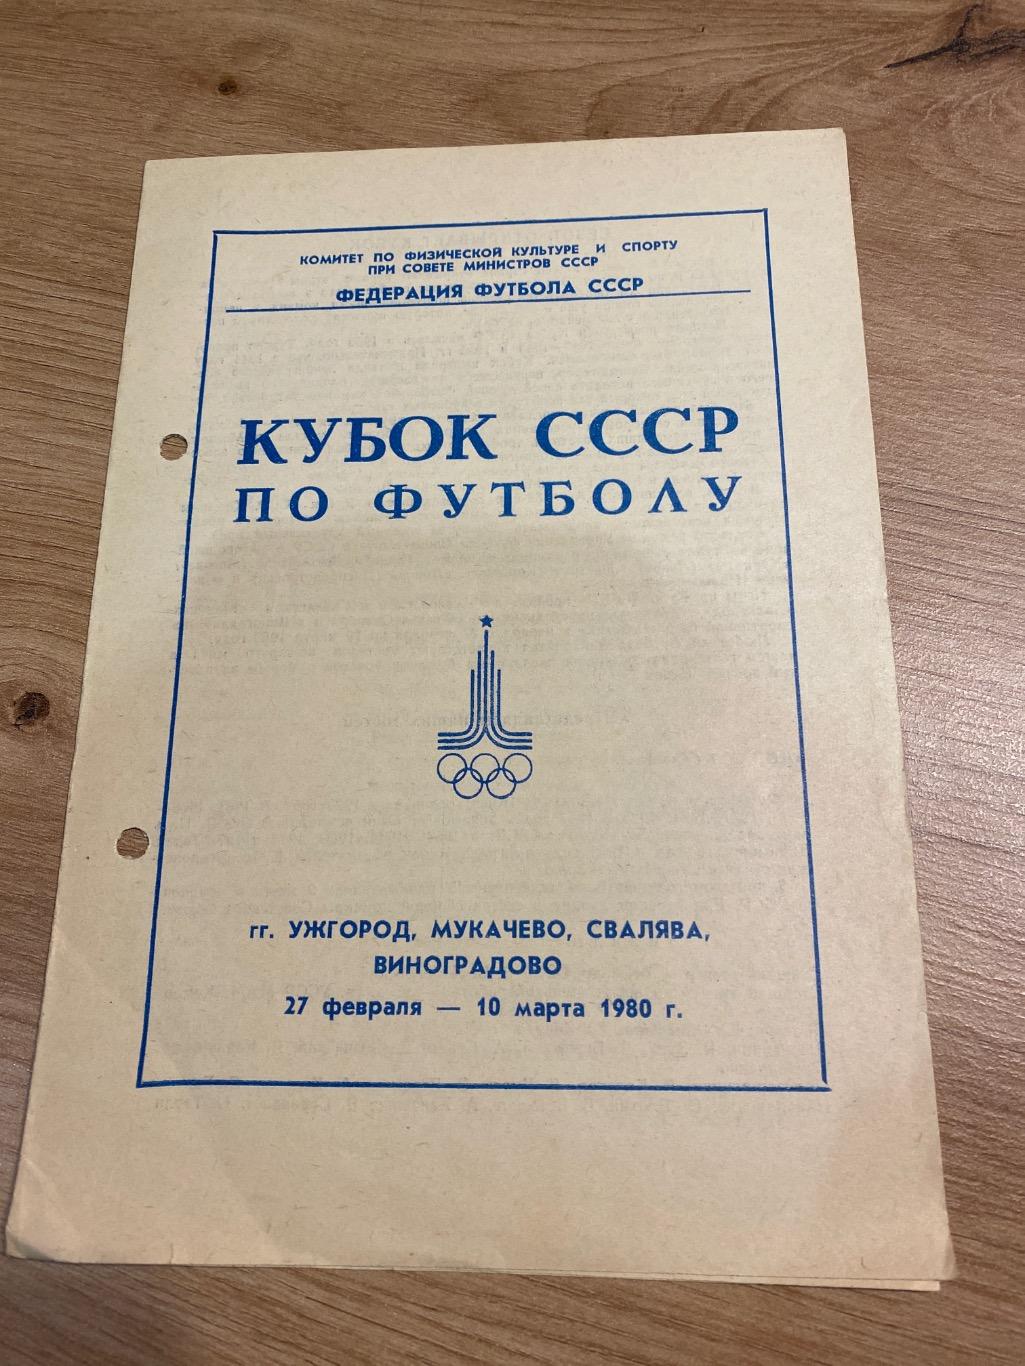 Кубок СССР 1980 (зона Ужгород, Мукачево)